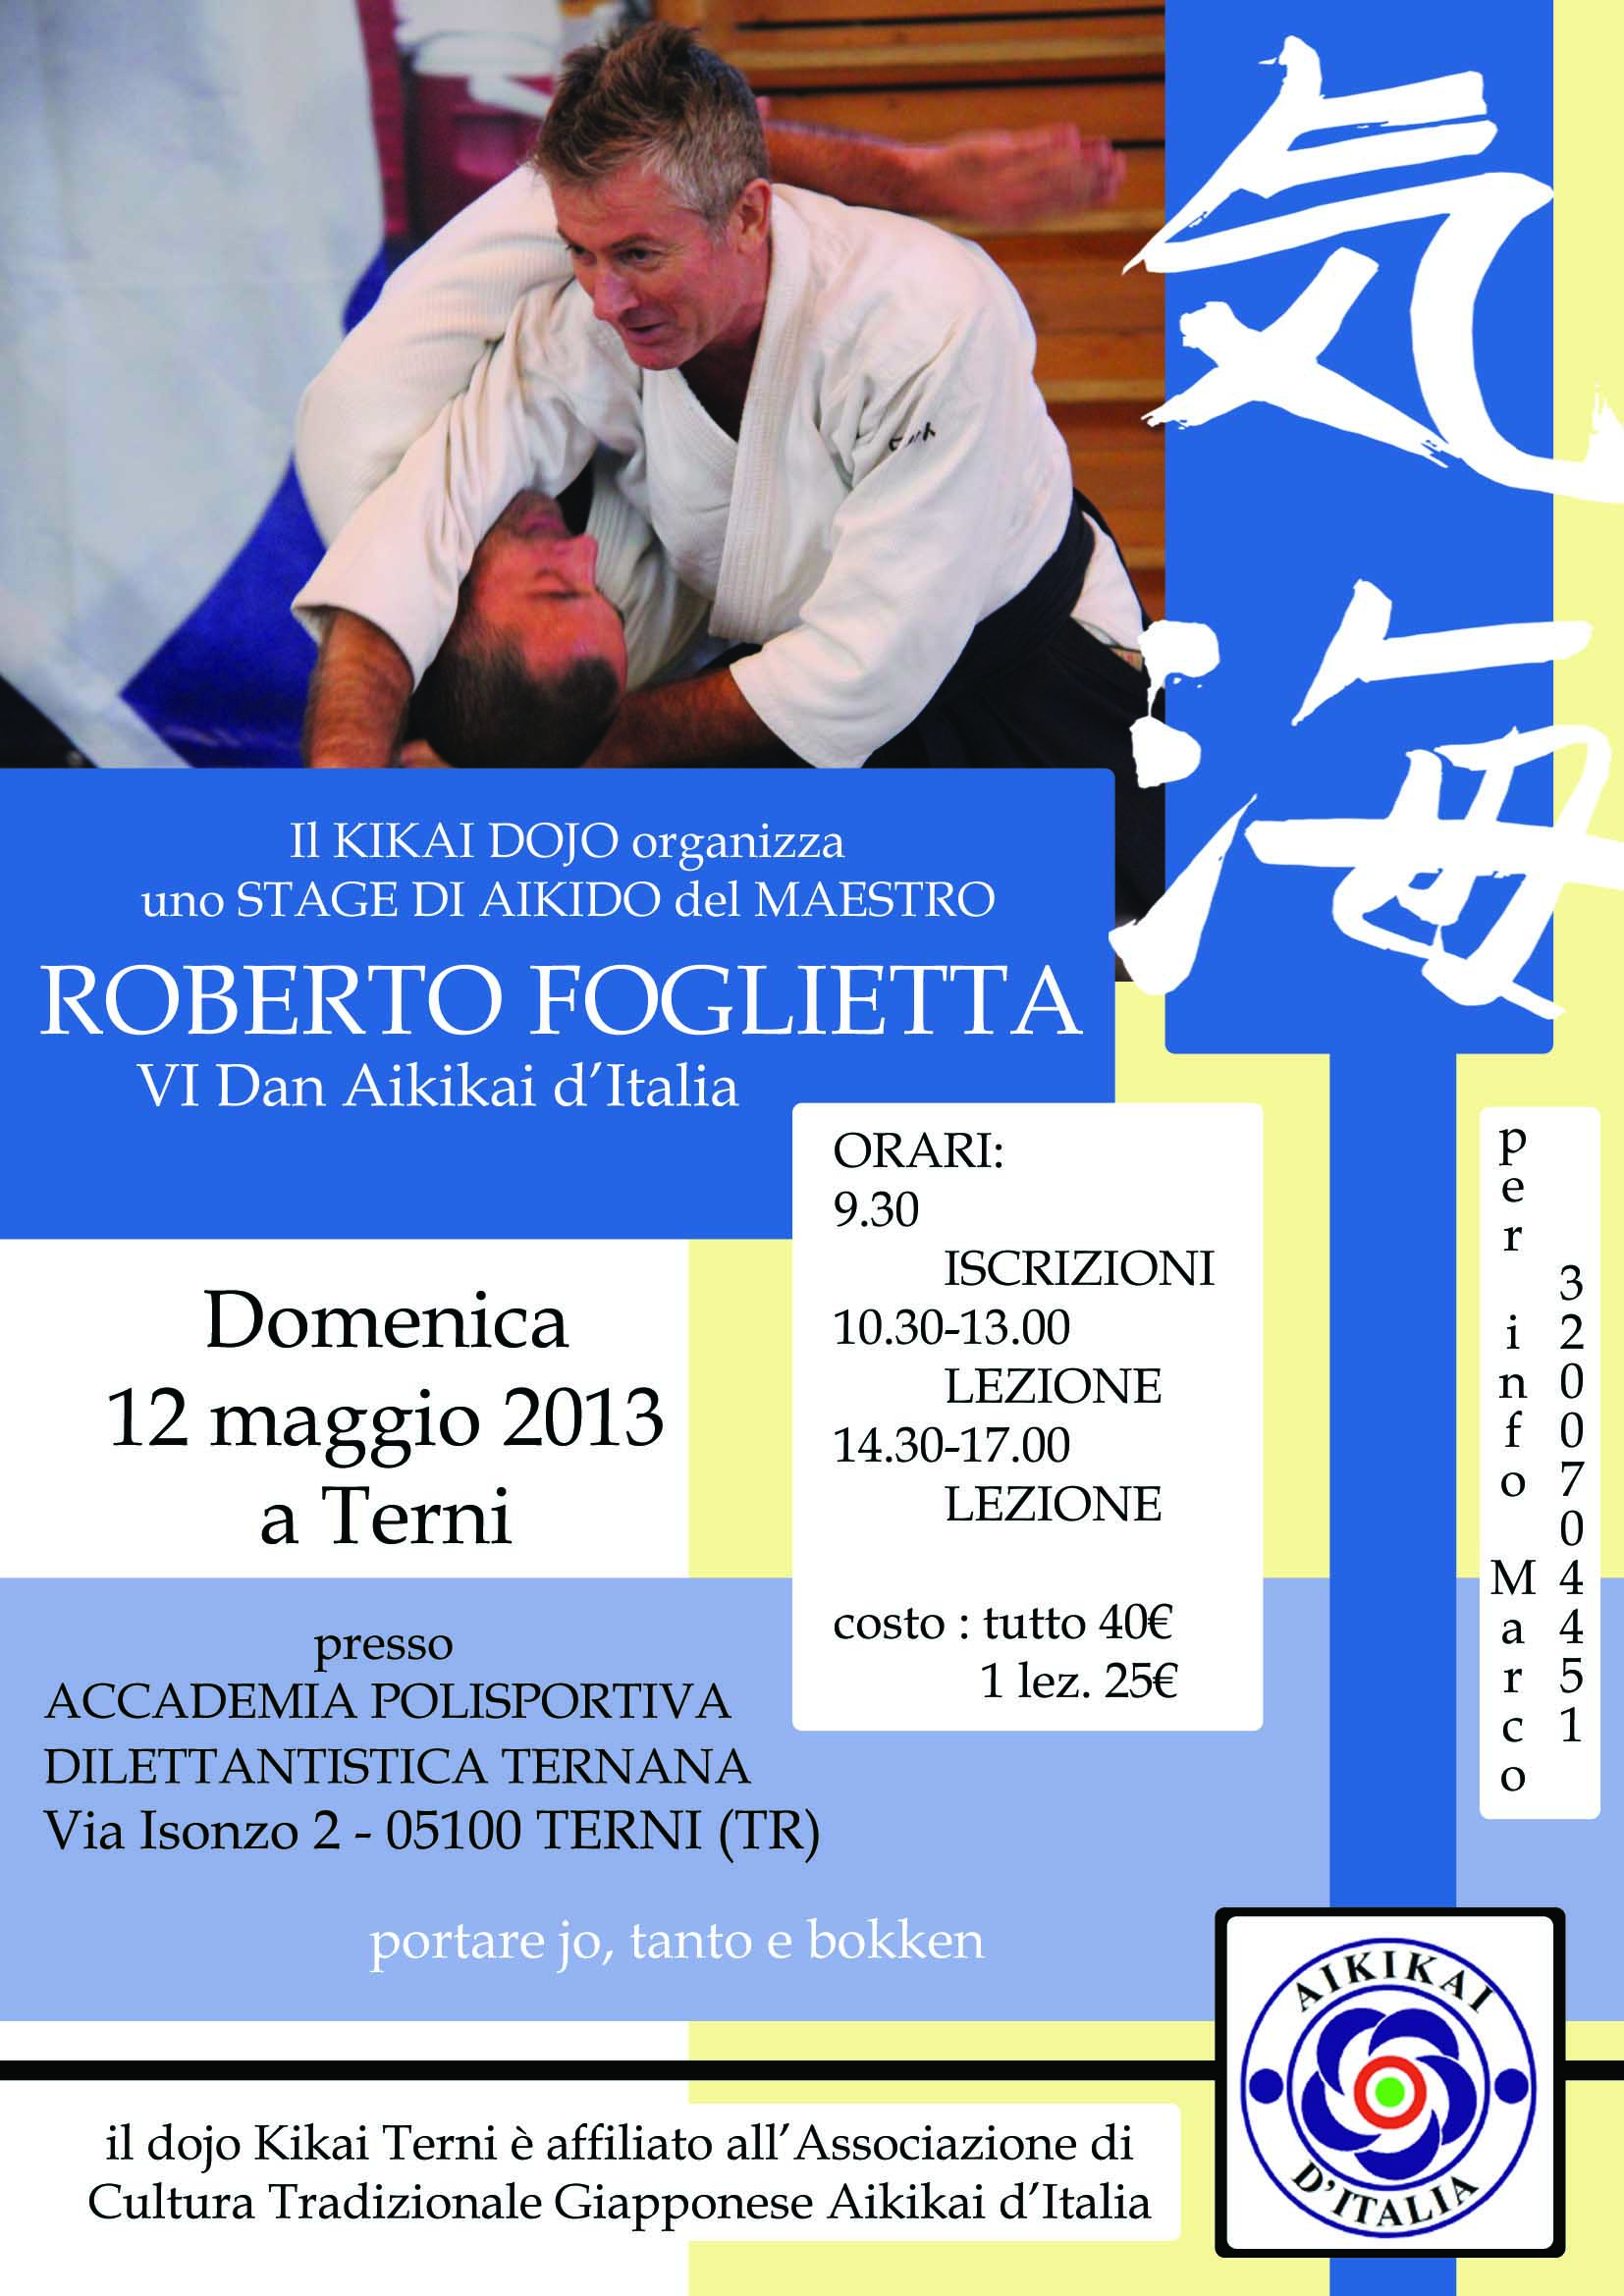 Foglietta Terni 12 maggio 2013 copy